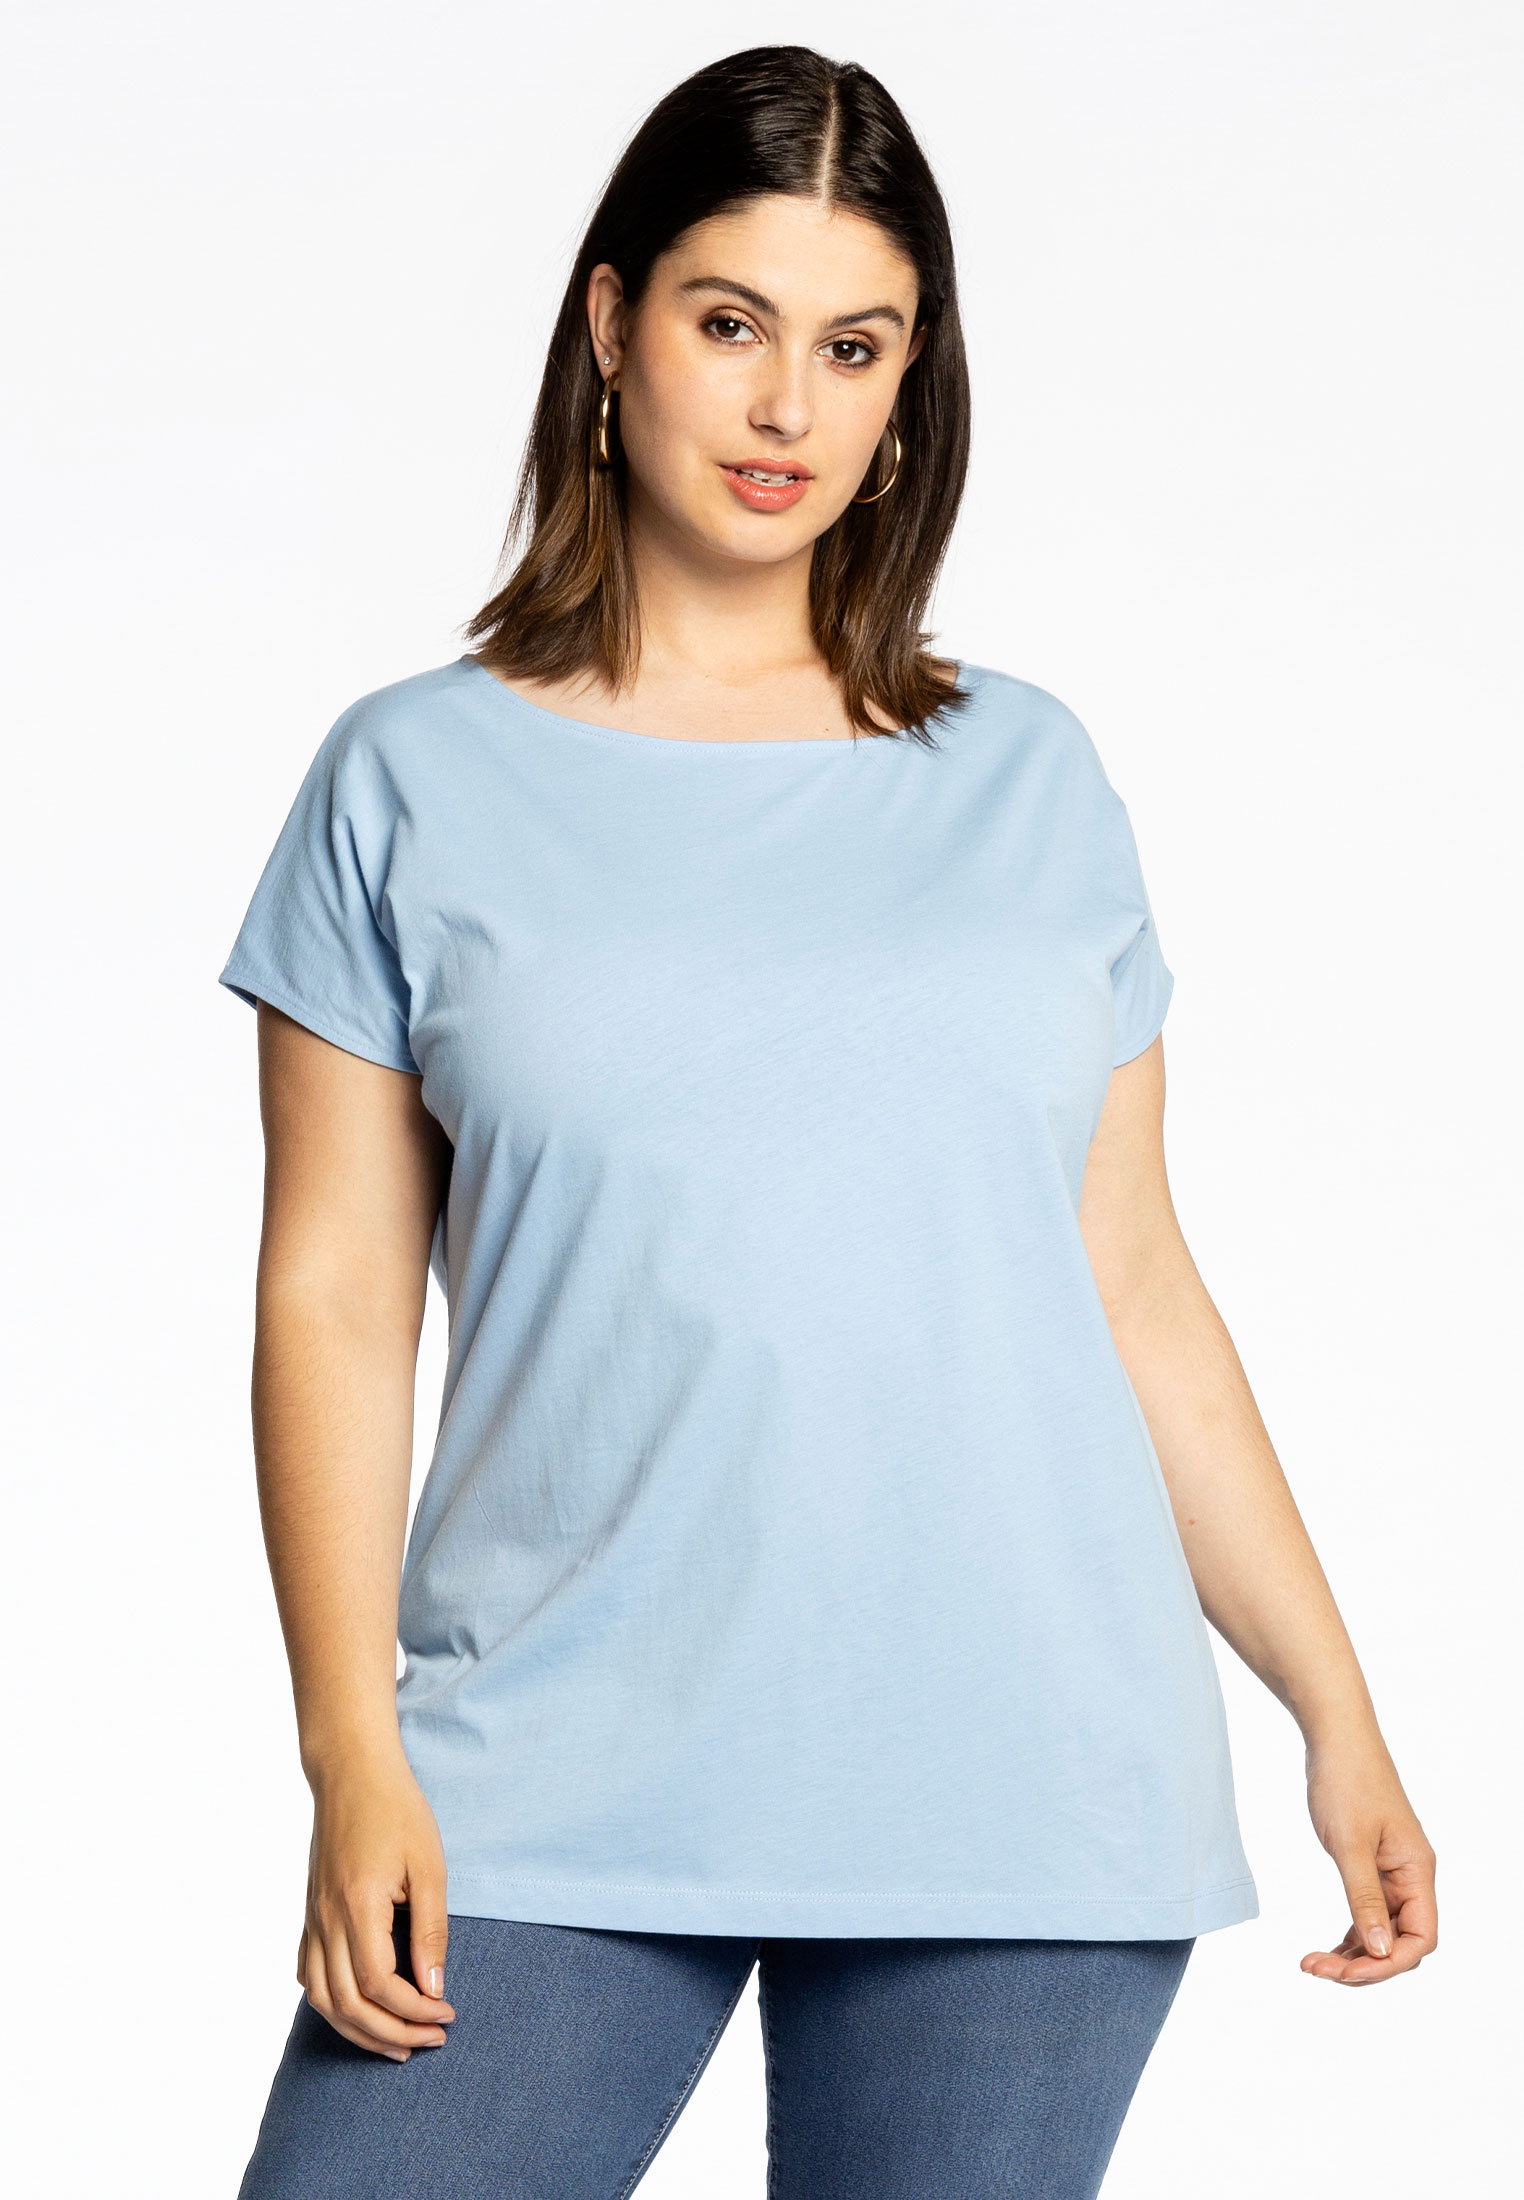 T-shirt kapmouwen COTTON 46/48 light blue